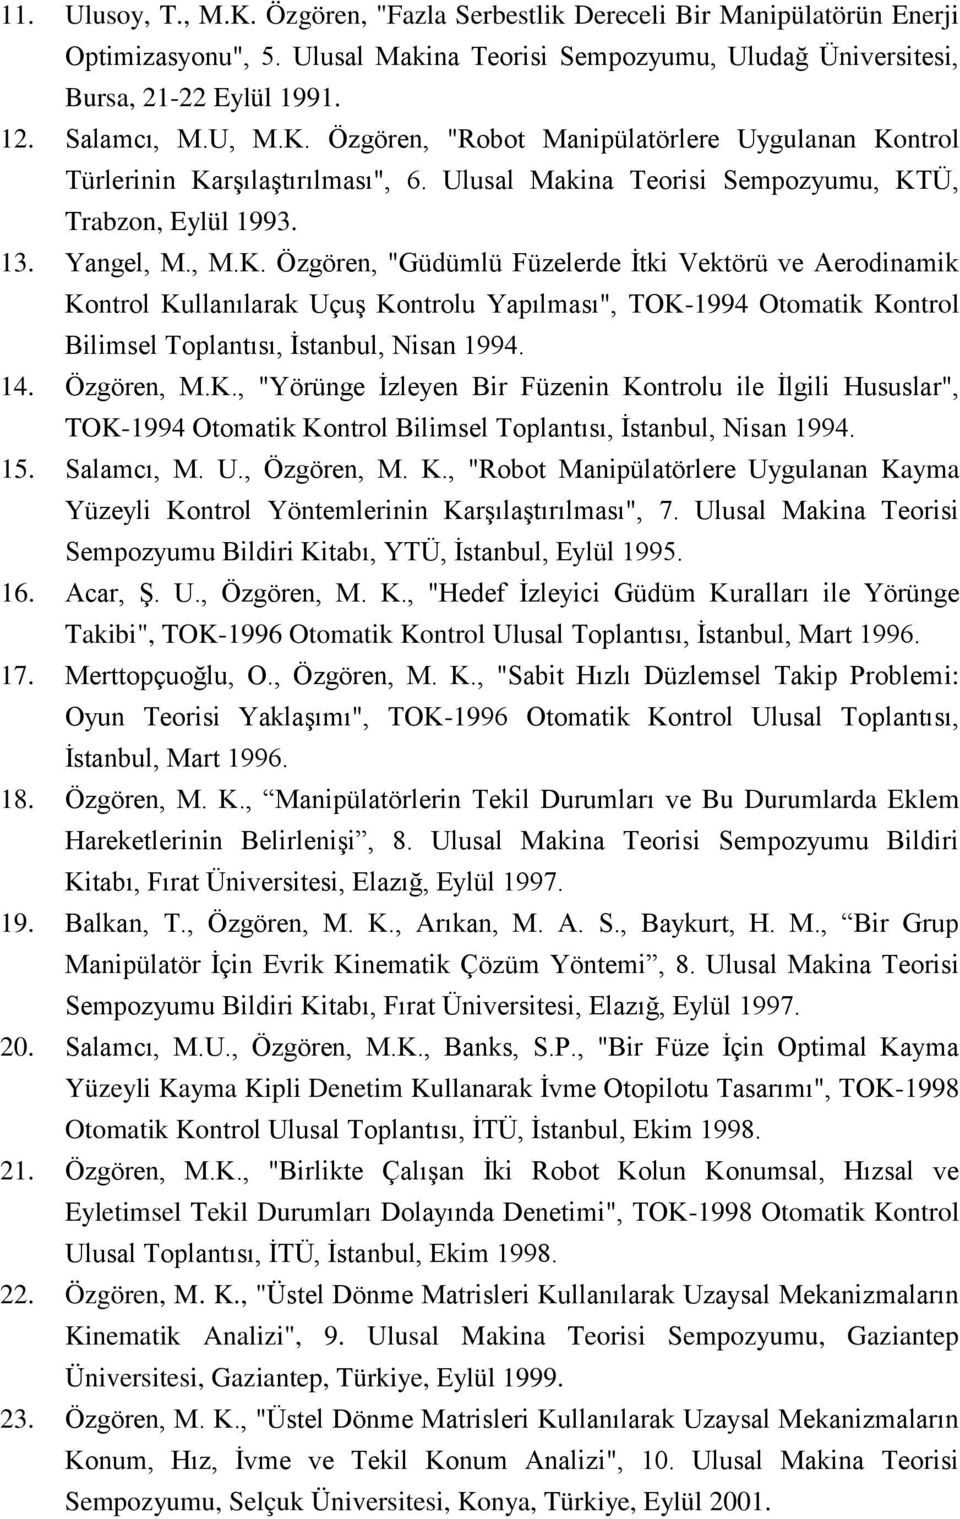 14. Özgören, M.K., "Yörünge İzleyen Bir Füzenin Kontrolu ile İlgili Hususlar", TOK-1994 Otomatik Kontrol Bilimsel Toplantısı, İstanbul, Nisan 1994. 15. Salamcı, M. U., Özgören, M. K., "Robot Manipülatörlere Uygulanan Kayma Yüzeyli Kontrol Yöntemlerinin Karşılaştırılması", 7.